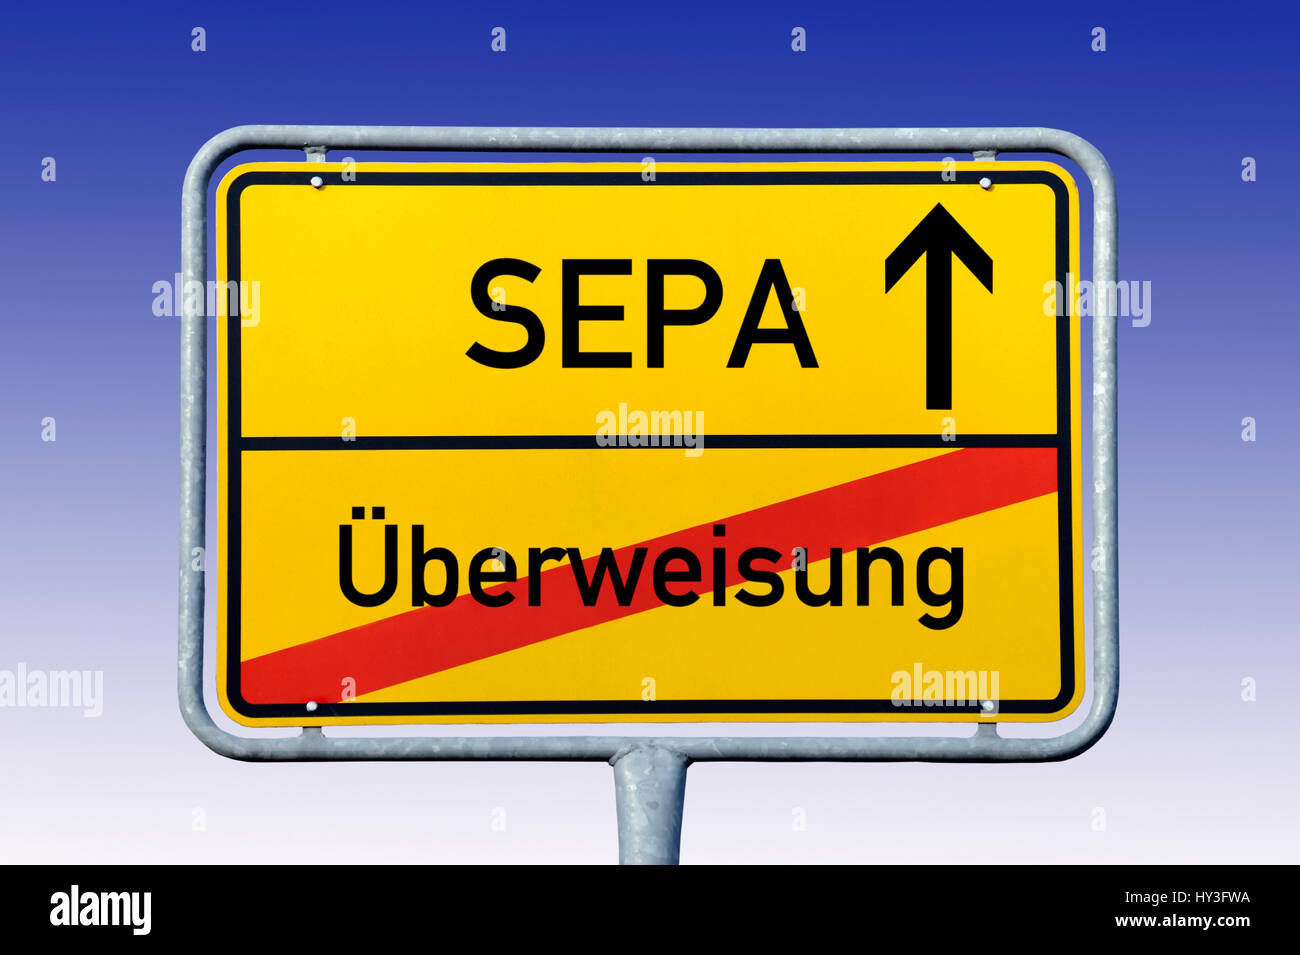 Local sign with label SEPA and ? ? berweisung, Ortsschild mit Aufschrift SEPA und Überweisung Stock Photo